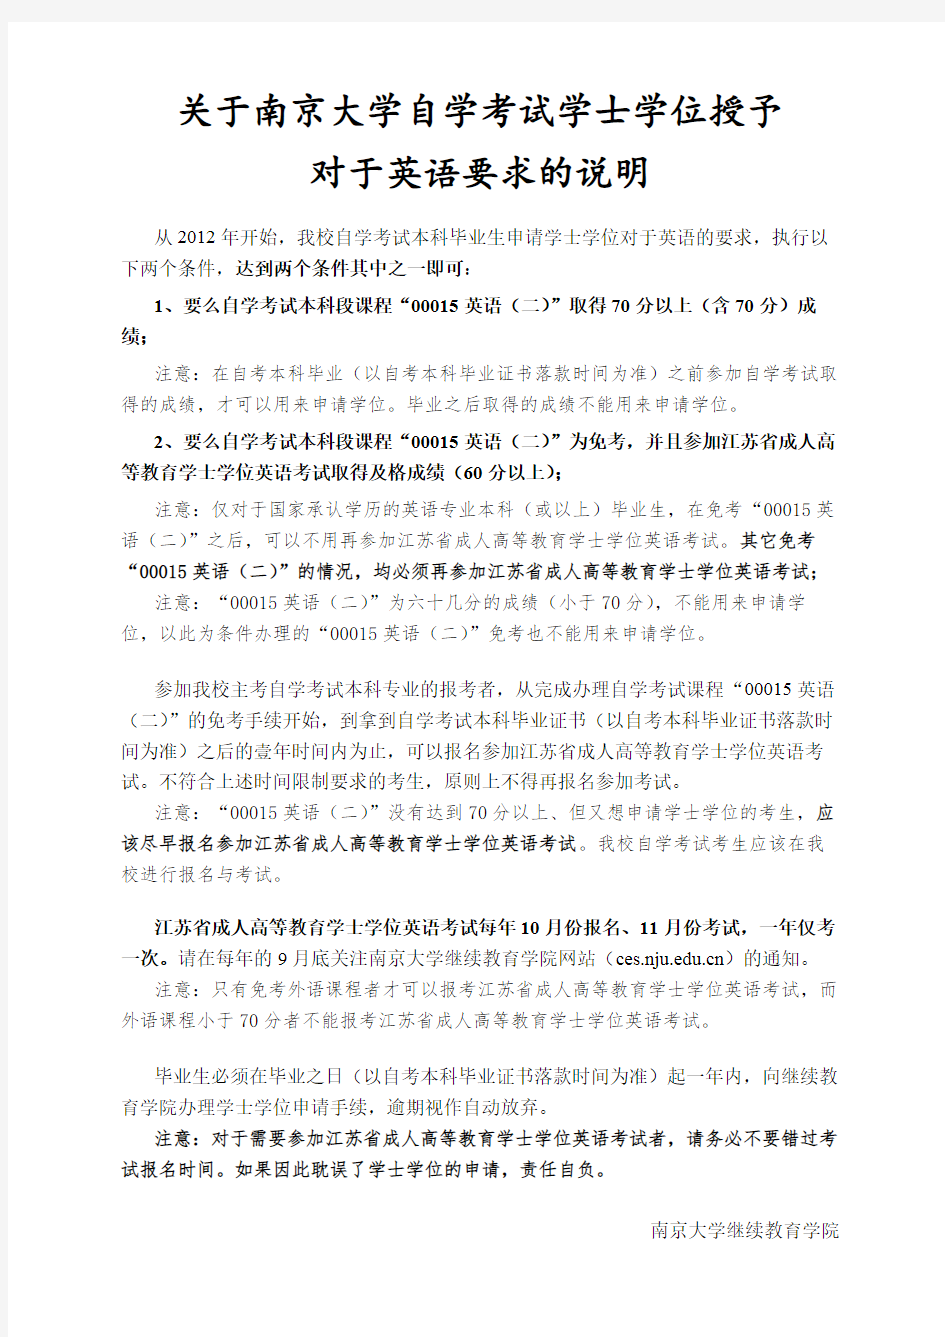 关于南京大学自学考试学士学位授予对于英语要求的说明